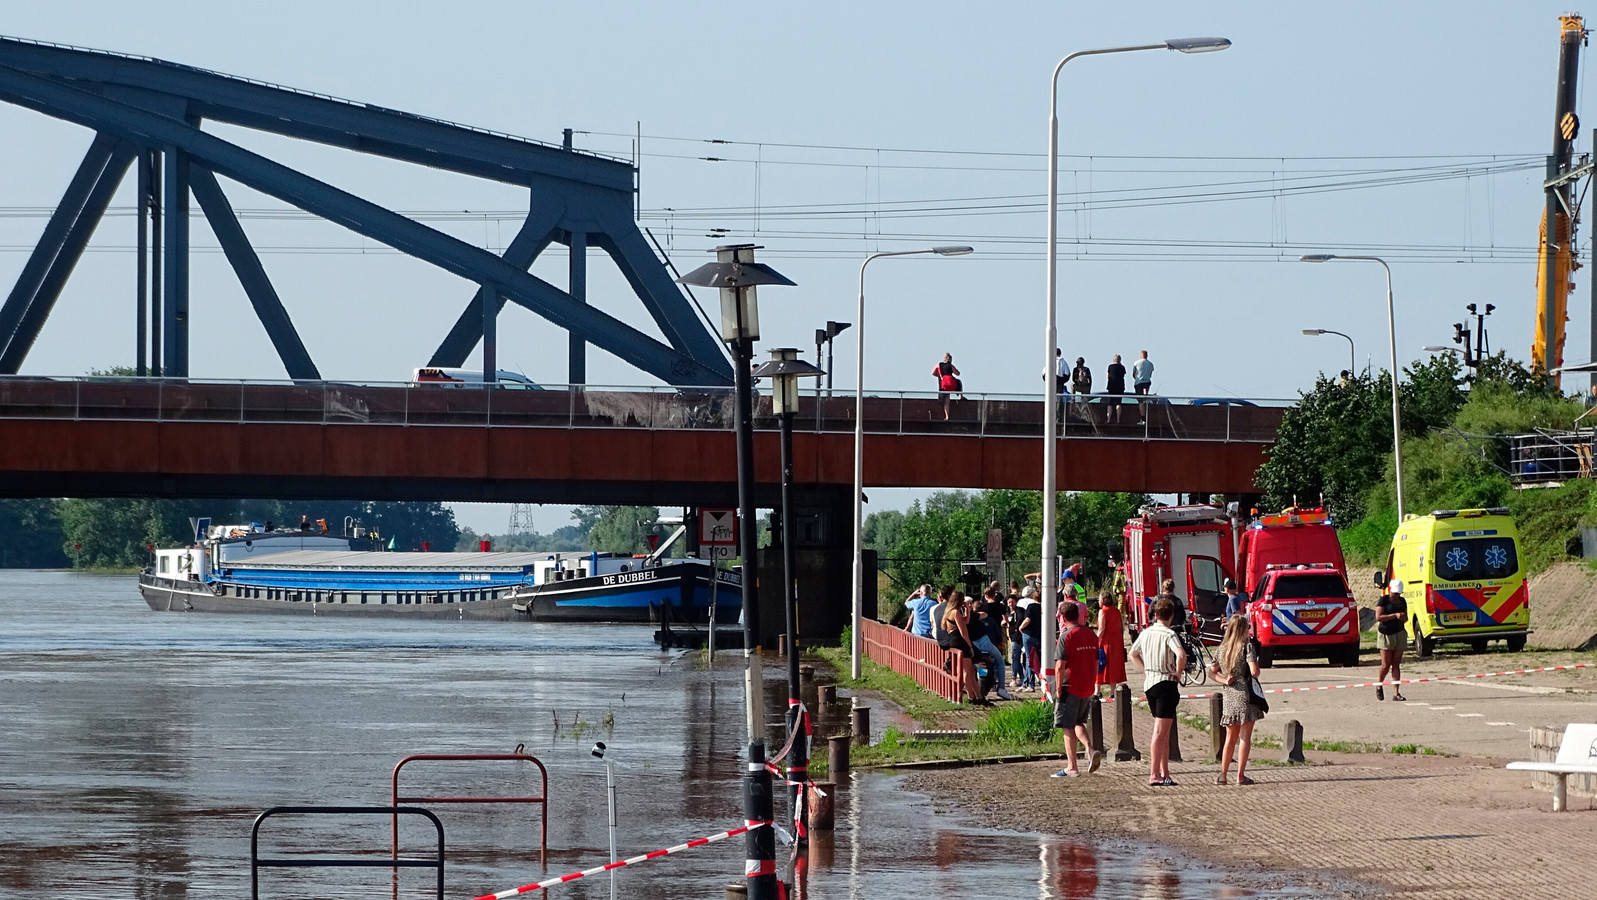 Een binnenvaartschipper kwam onlangs met zijn kajuit in botsing met de brug van Zutphen.